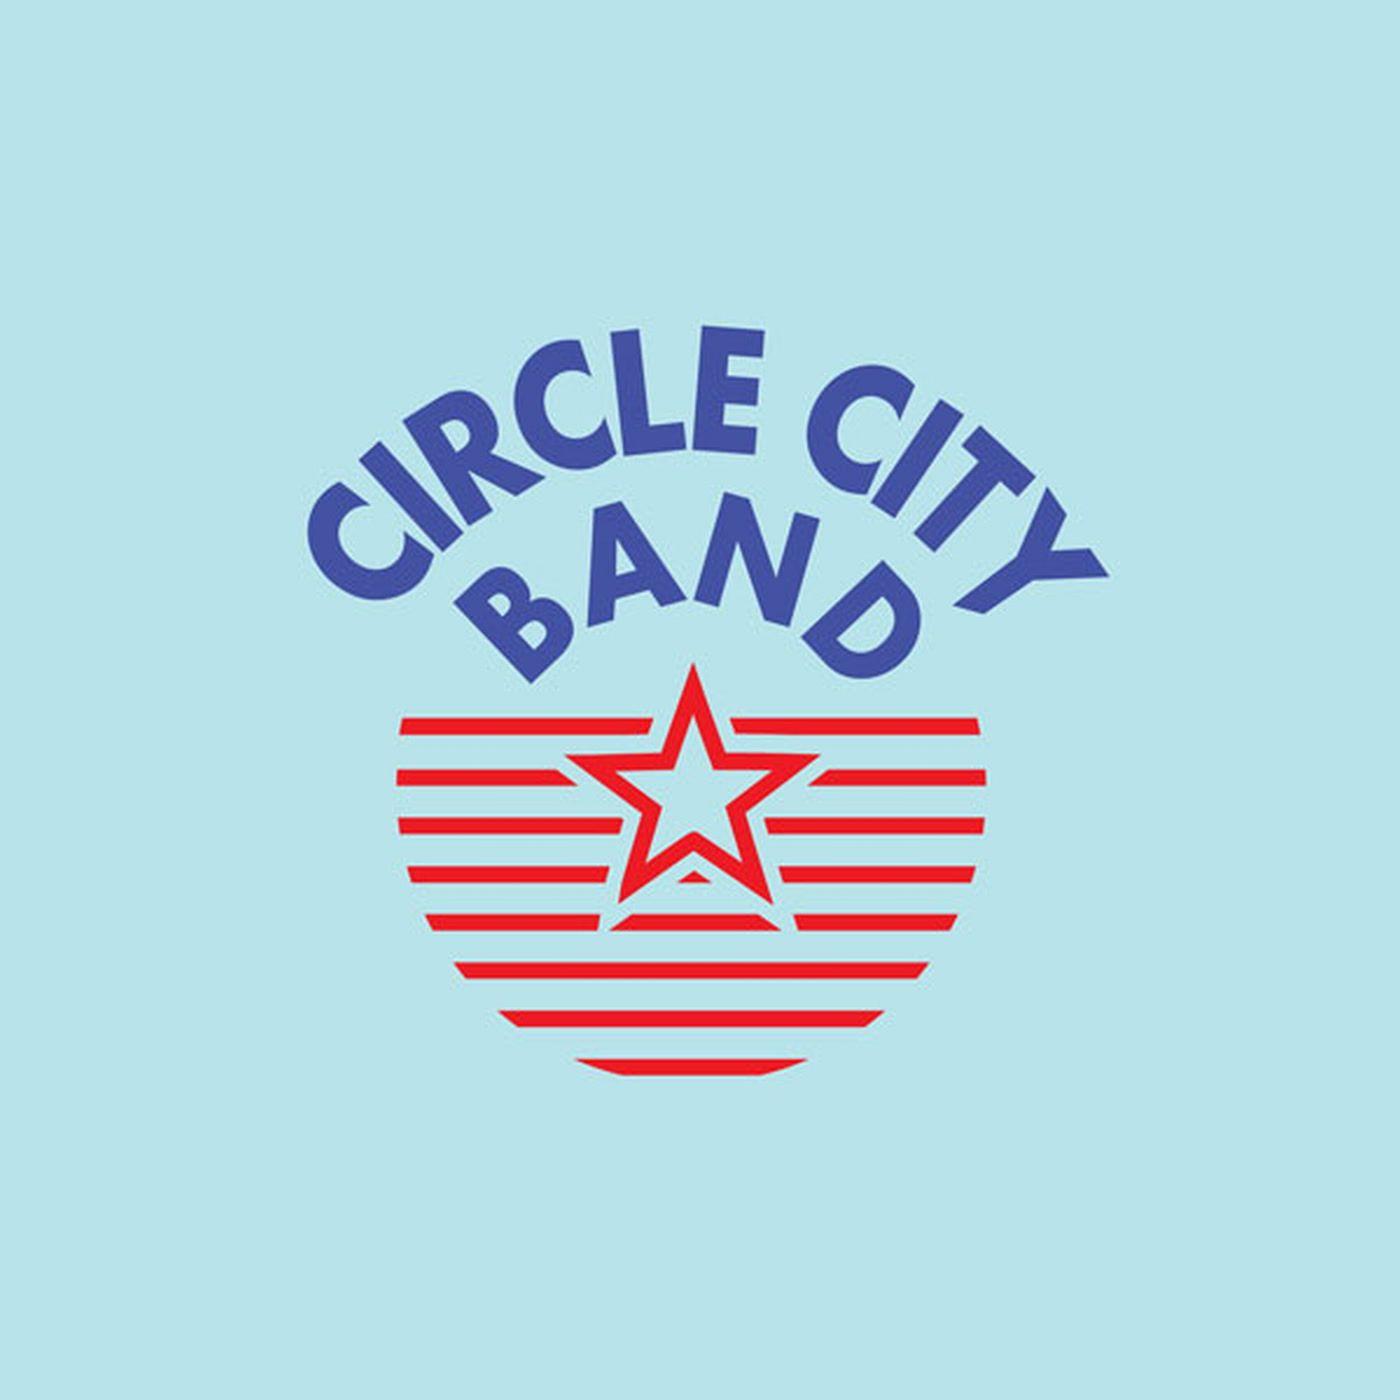 Circle City Logo - Circle City Band